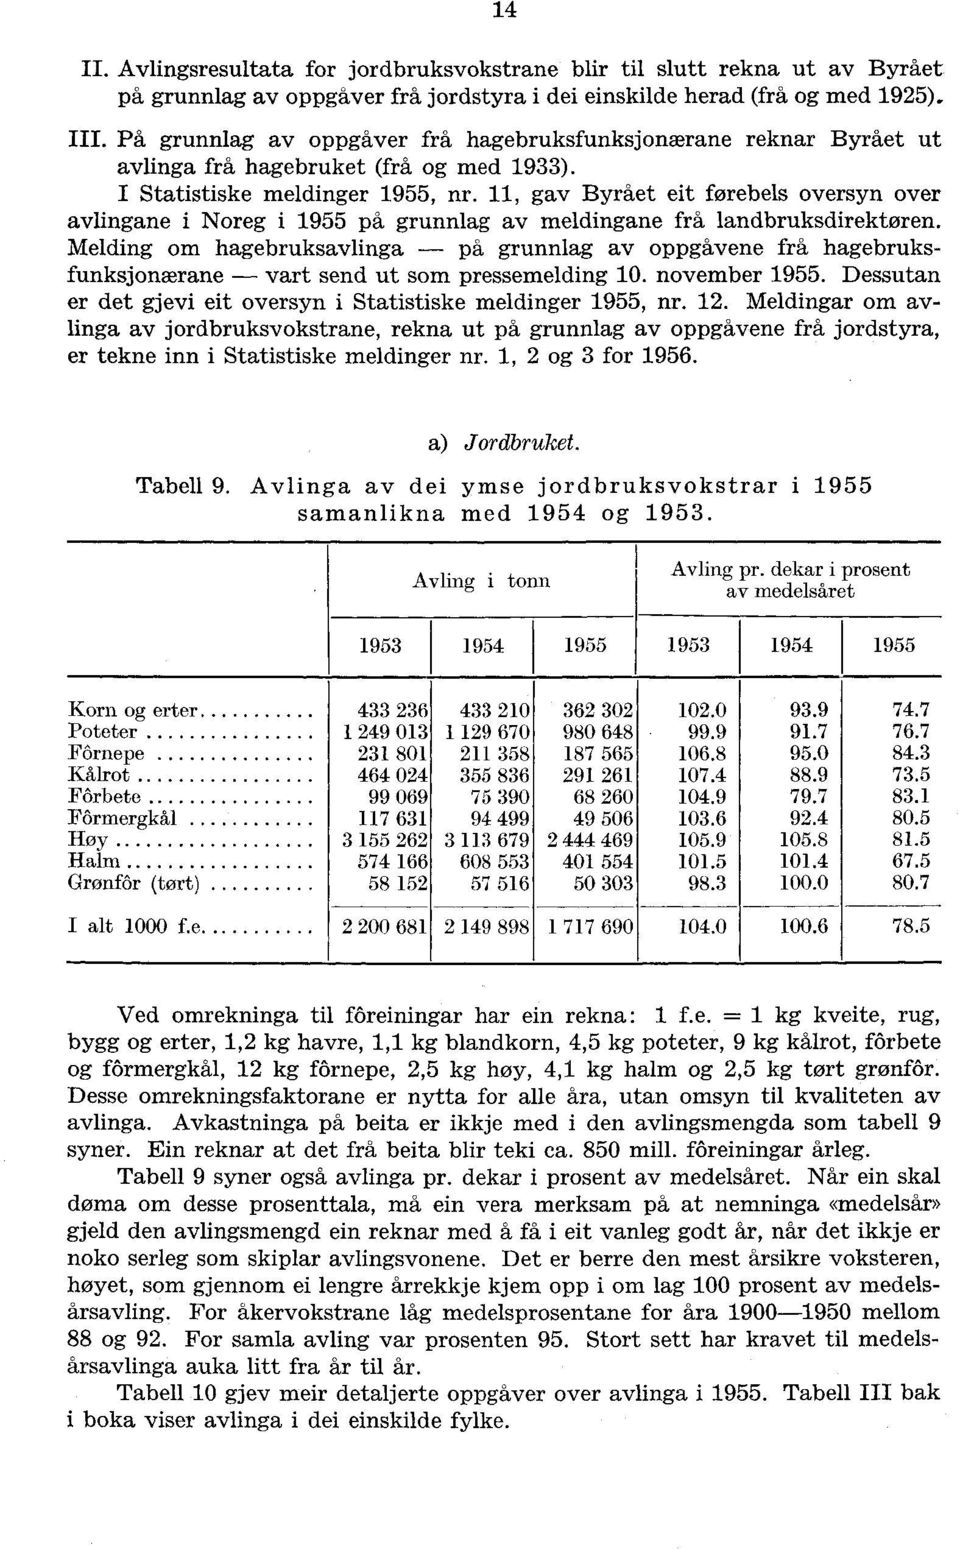 11, gav Byrået eit førebels oversyn over avlingane i Noreg i 1955 på grunnlag av meldingane frå landbruksdirektøren.